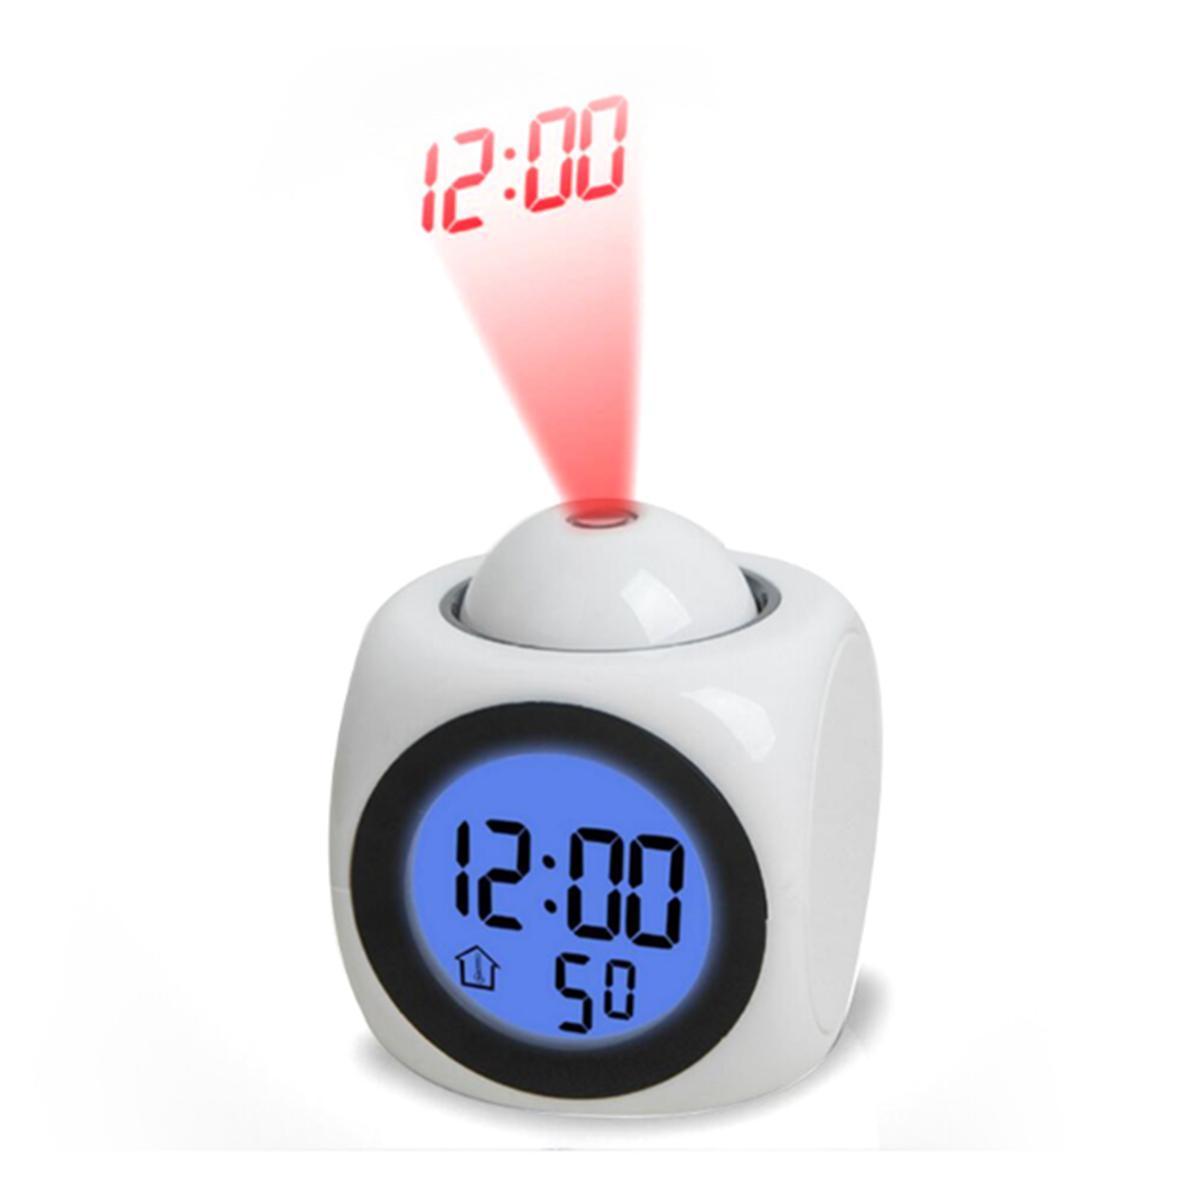 đồng hồ báo thức để bàn có giọng nói và chức năng hiển thị nhiệt độ bằng 2